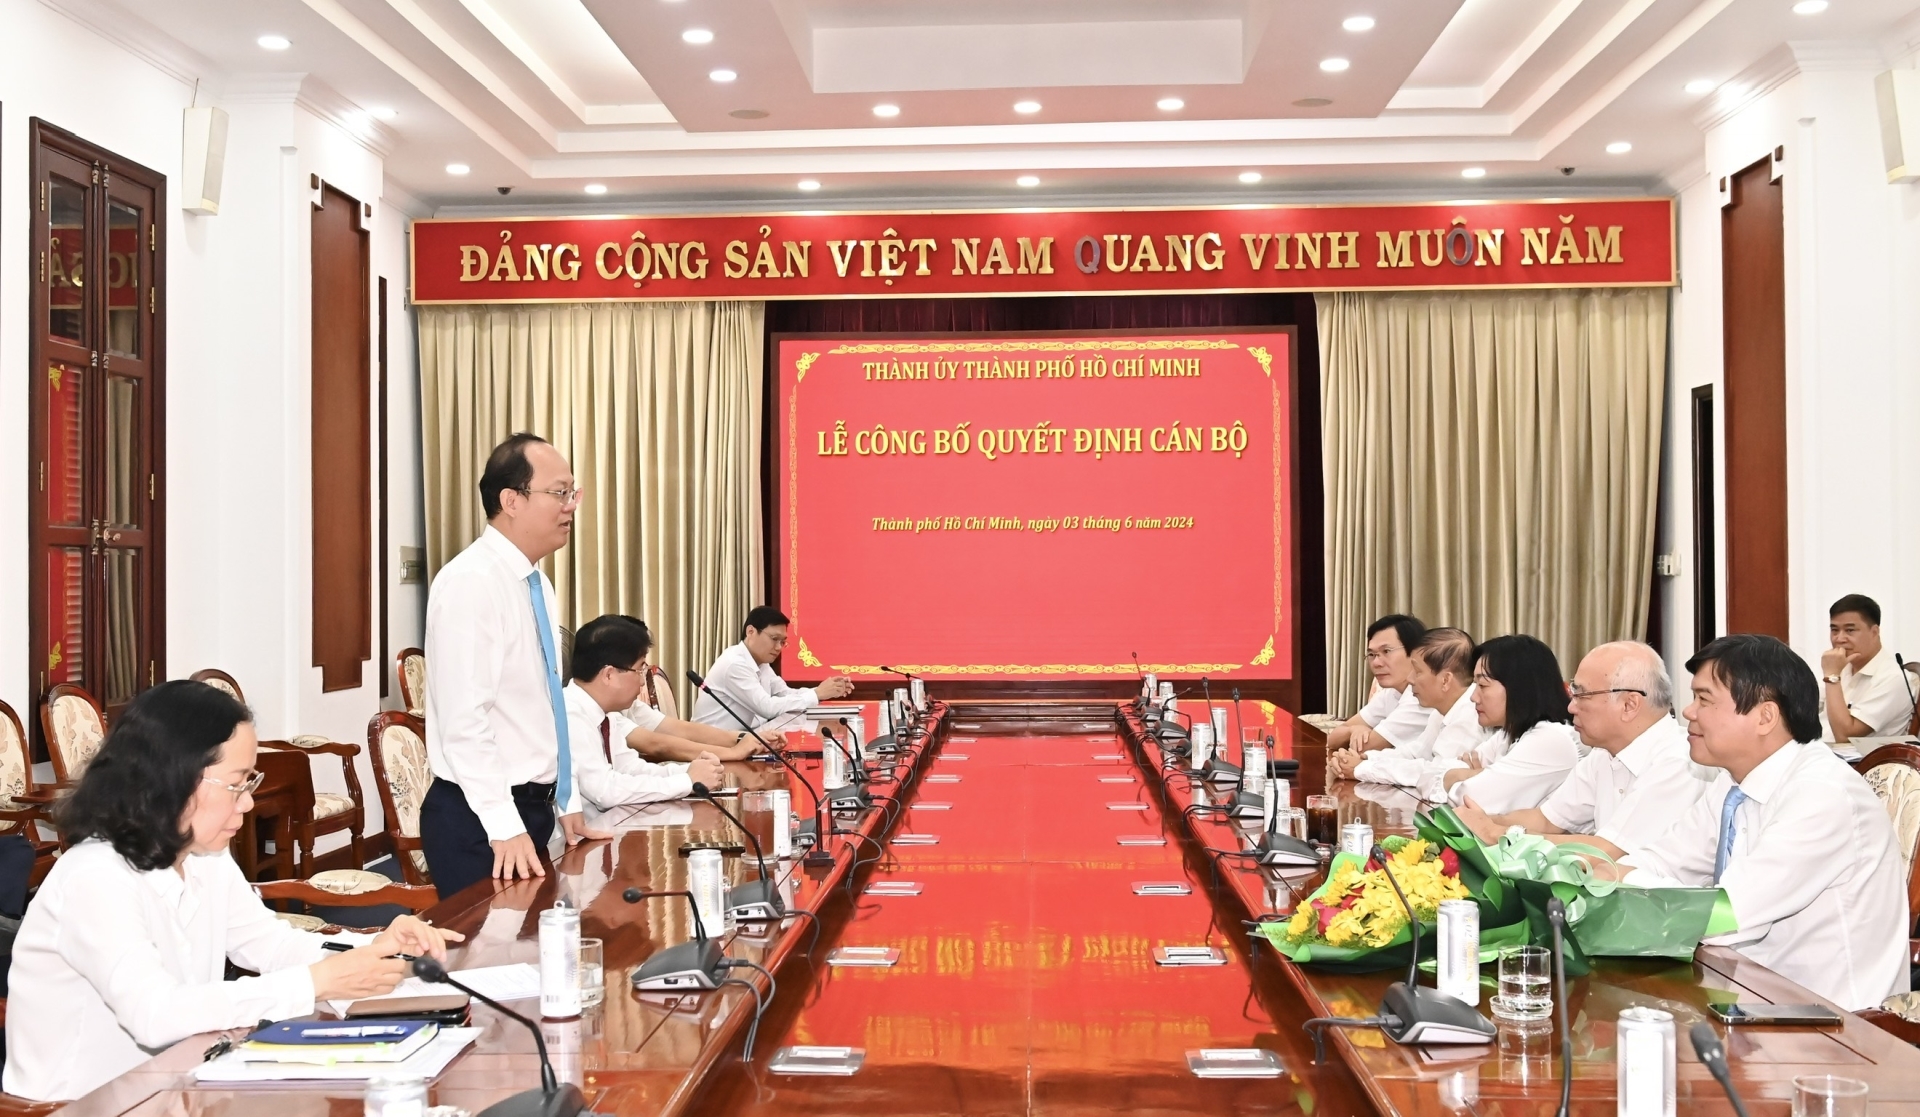 Phó Bí thư Thường trực Thành ủy TPHCM Nguyễn Hồ Hải phát biểu giao nhiệm vụ cho tân Phó Trưởng Ban Tuyên giáo Thành ủy TPHCM Tăng Hữu Phong.